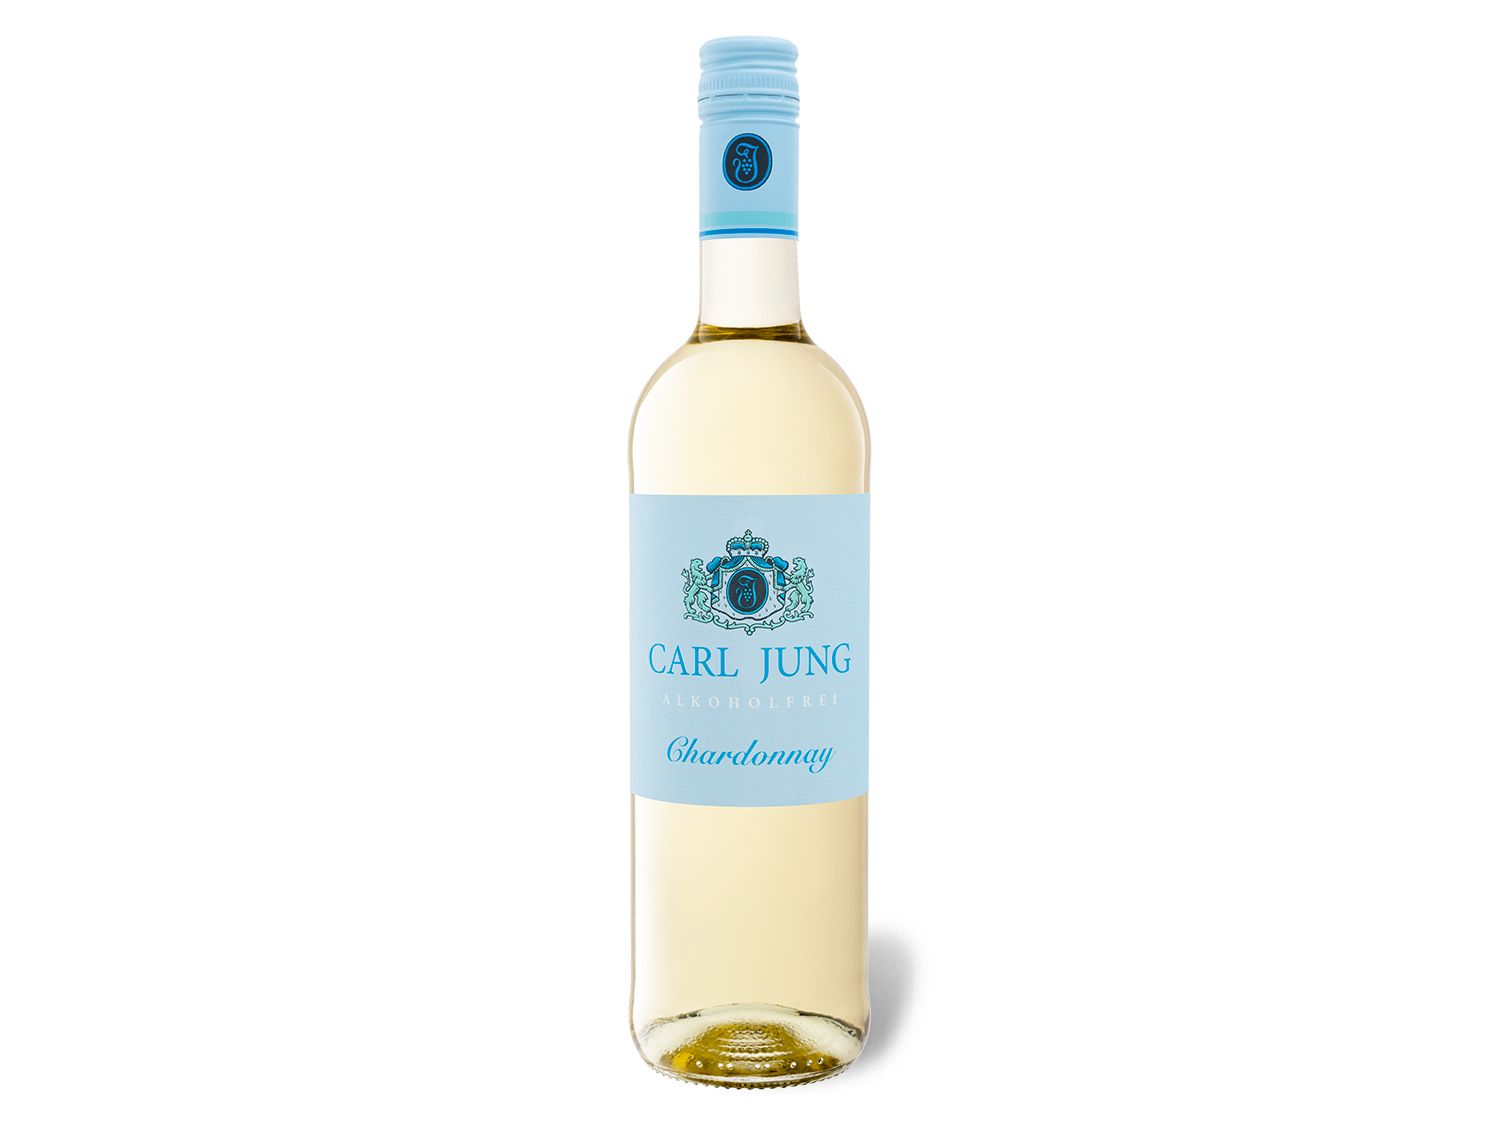 Carl Jung Chardonnay vegan, entalkoholisierter Weißwein Wein & Spirituosen Lidl DE